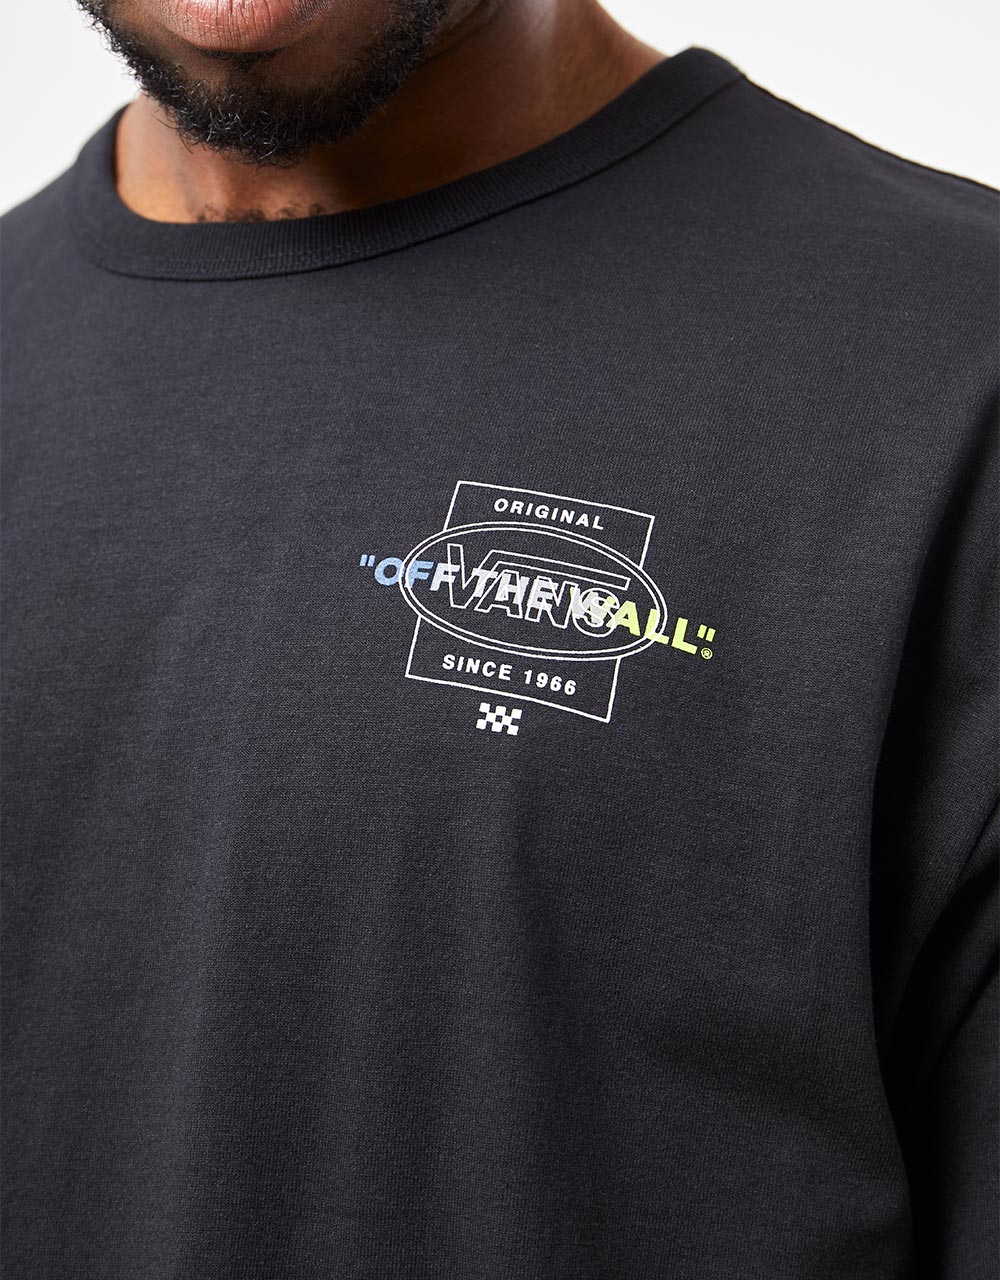 Vans Off The Wall Repeat DNA T-Shirt - Black